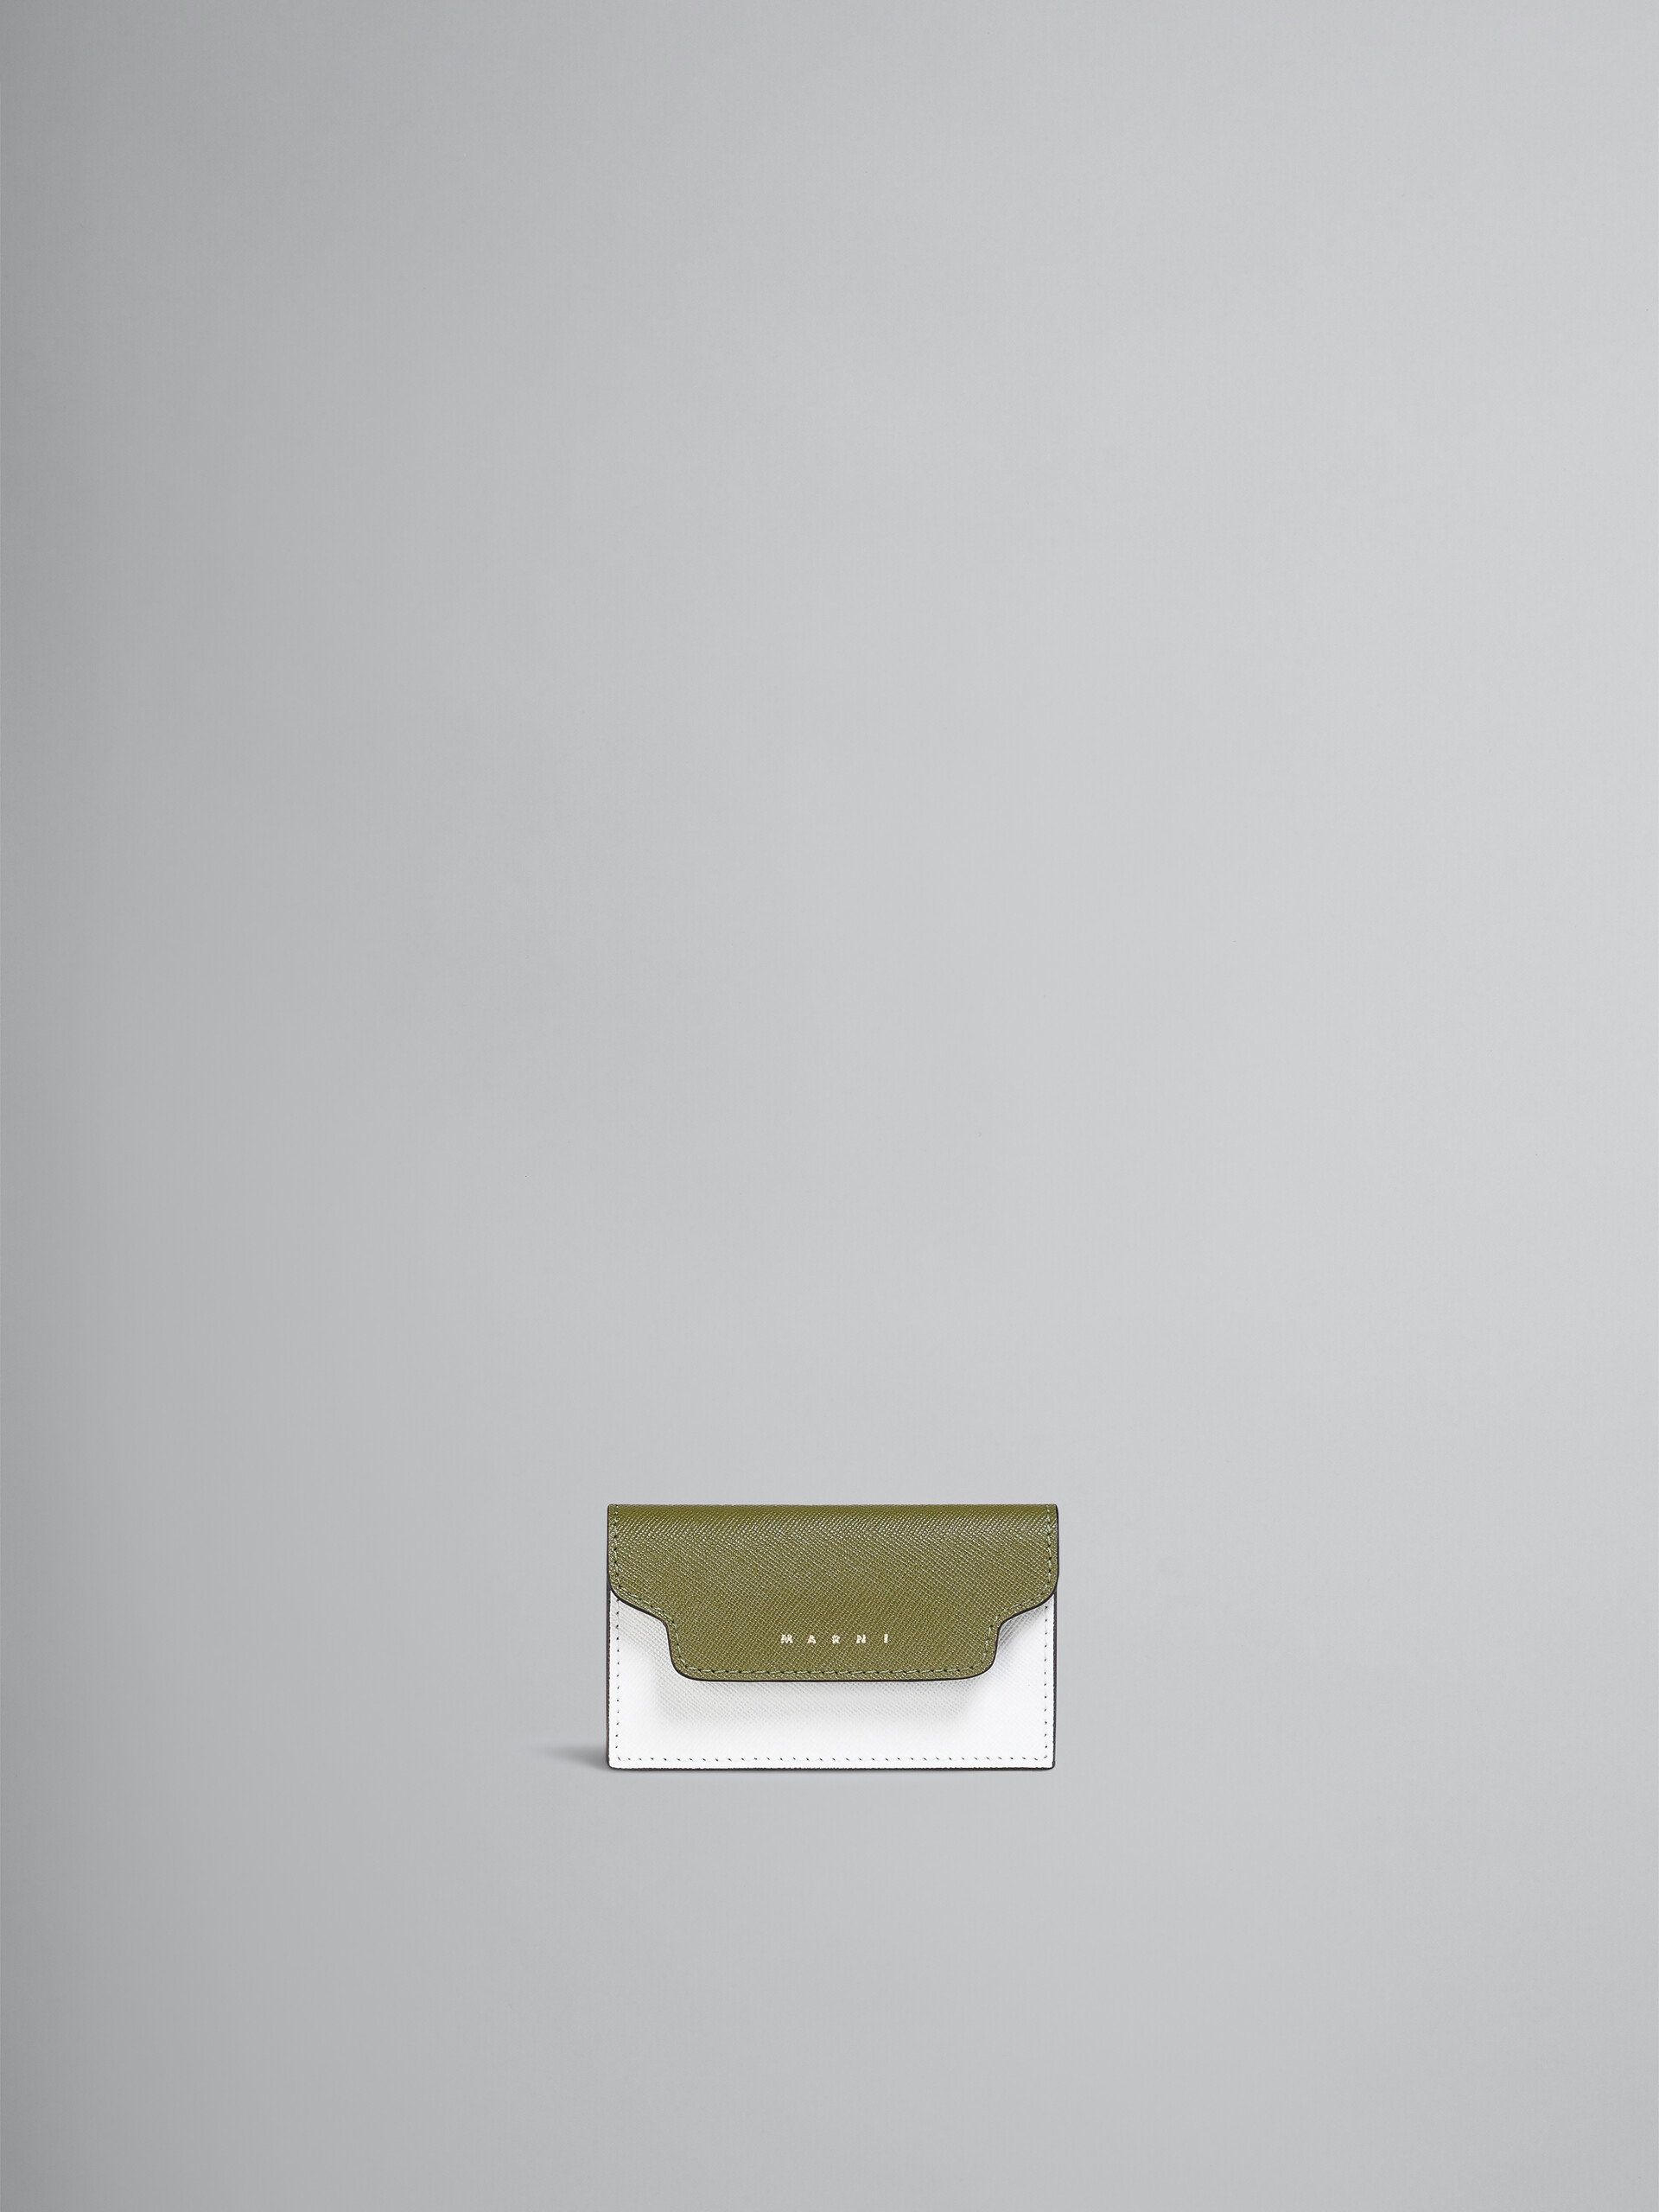 Porte-cartes de visite en saffiano vert et blanc ton sur ton - Portefeuilles - Image 1